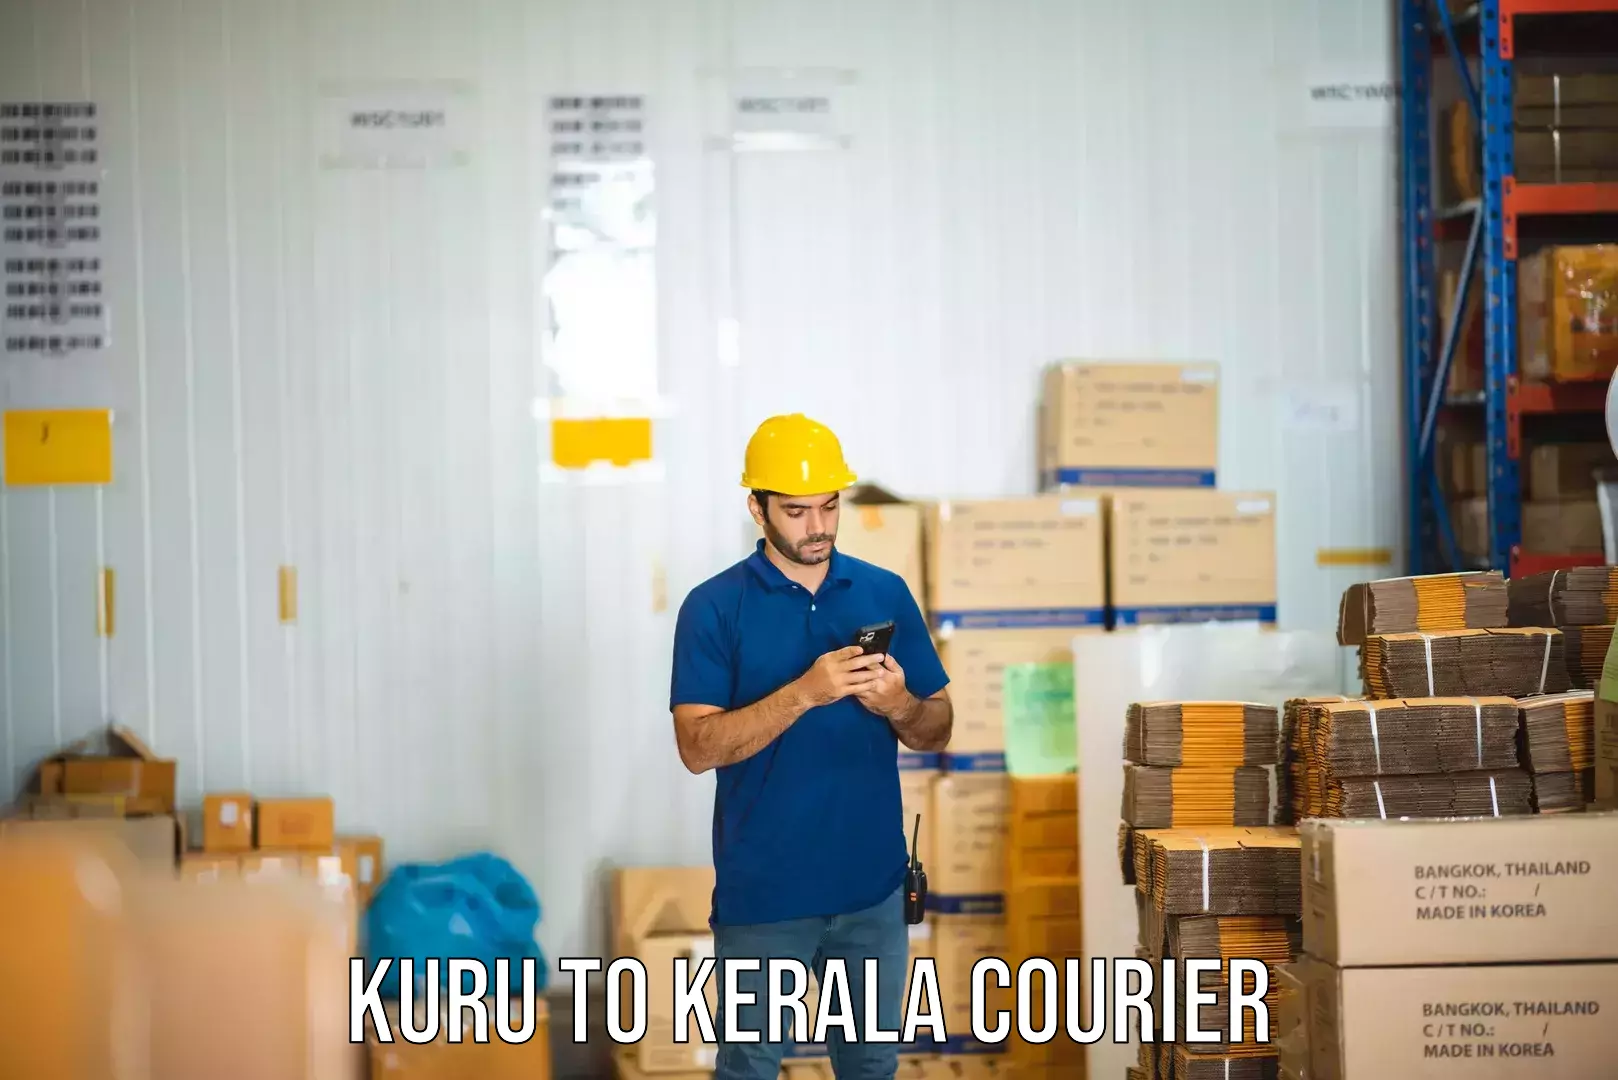 Cost-effective courier solutions Kuru to Kerala